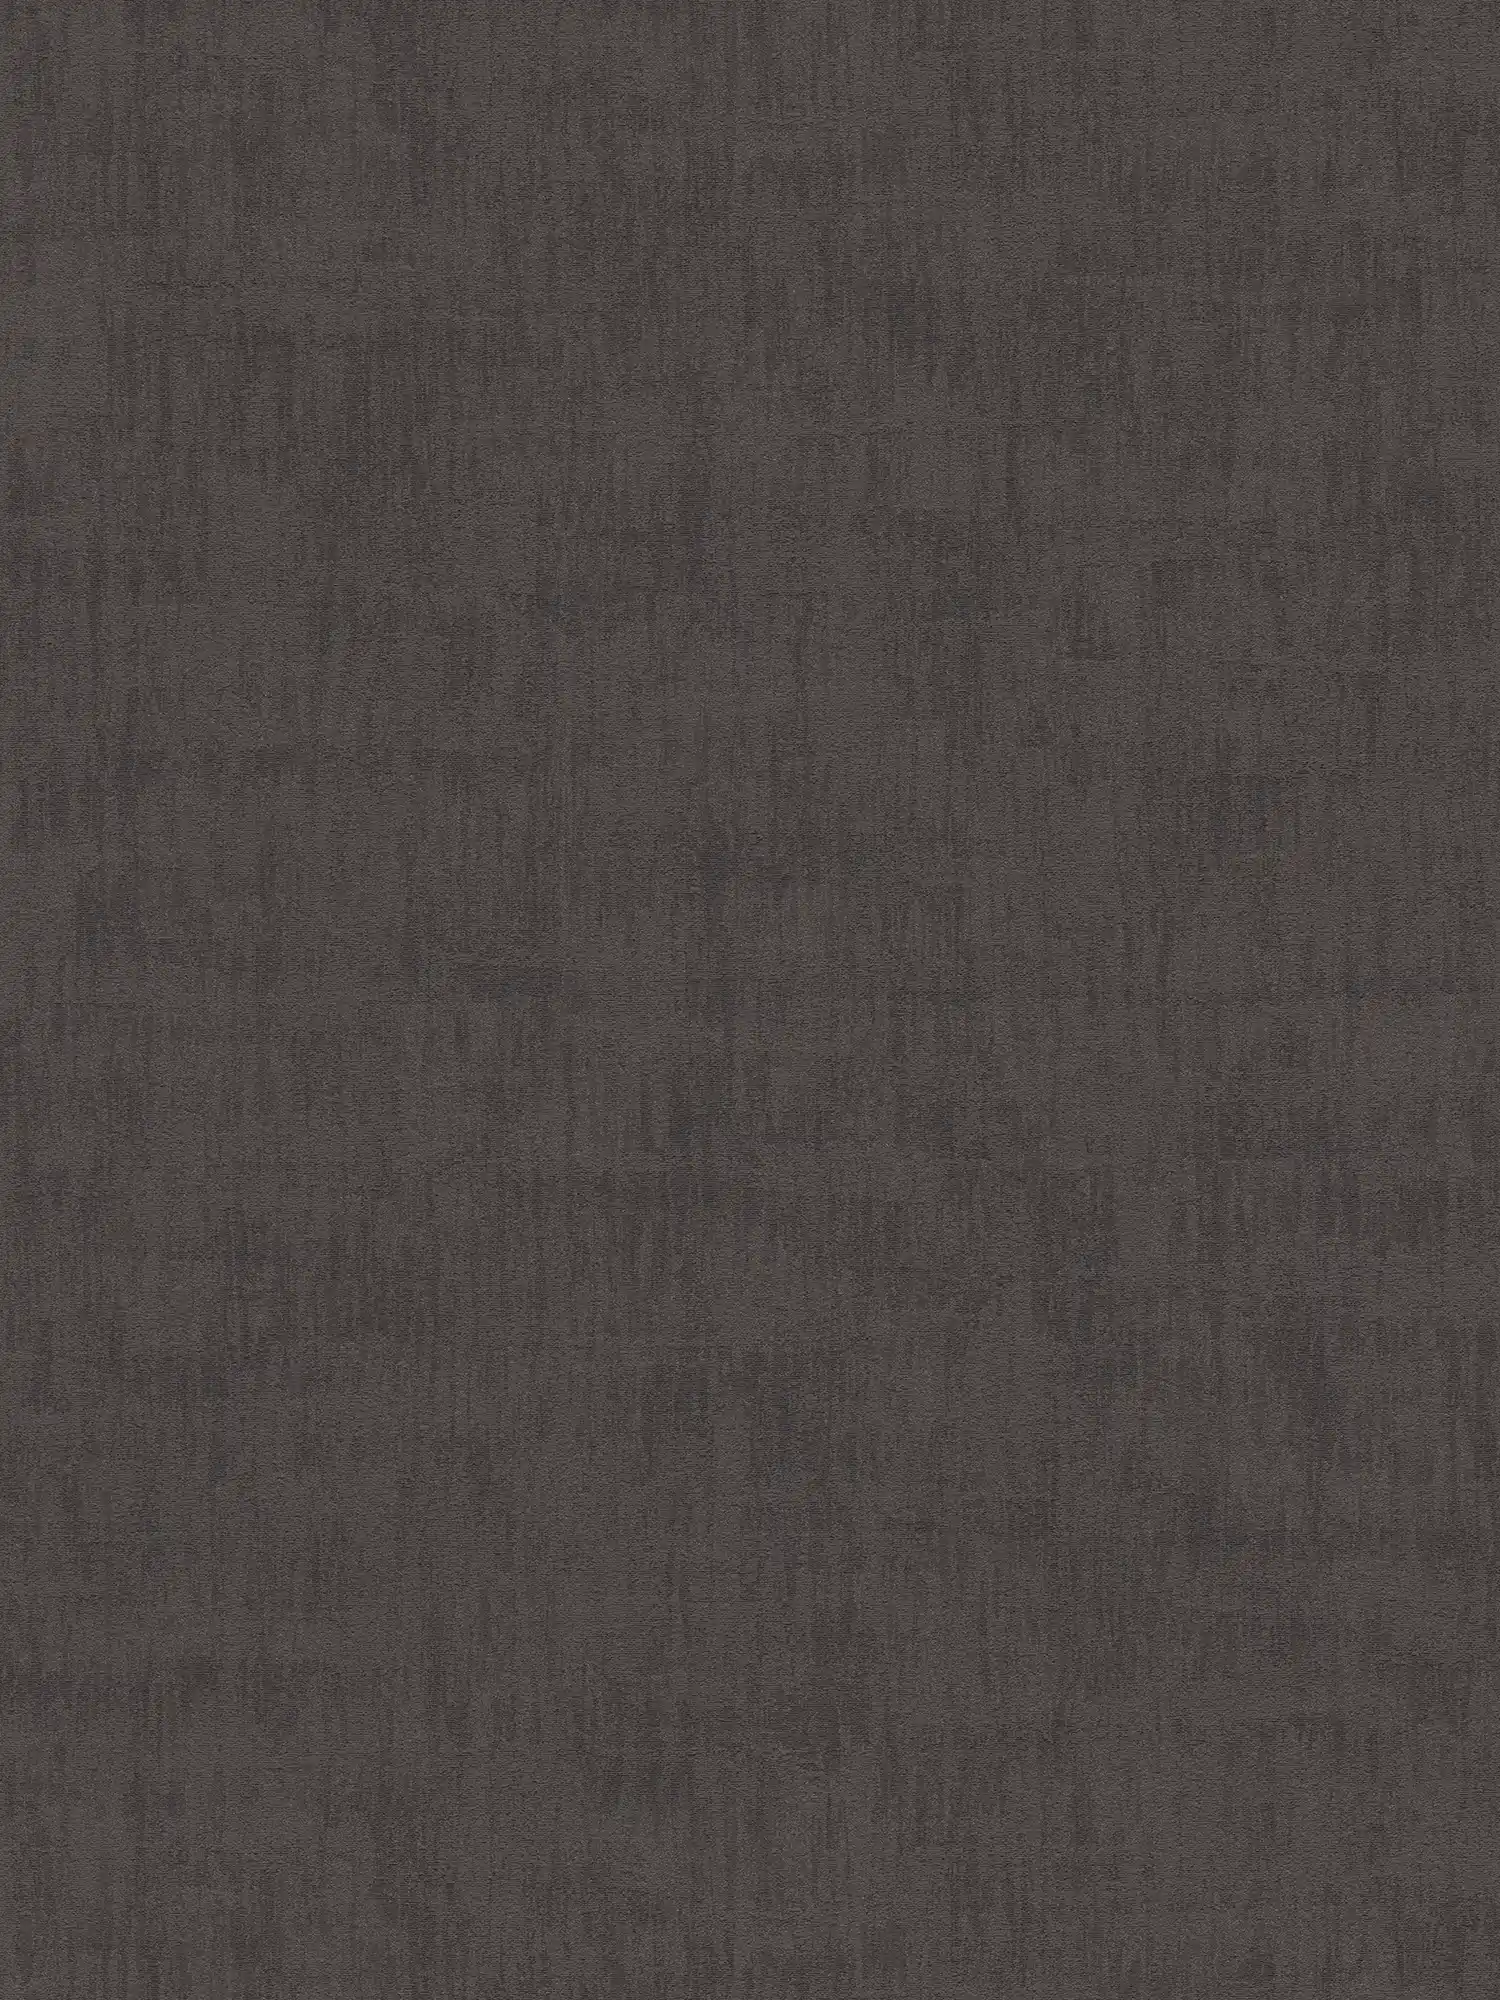 Gebruikt look behang met abstract raffia patroon - zwart
